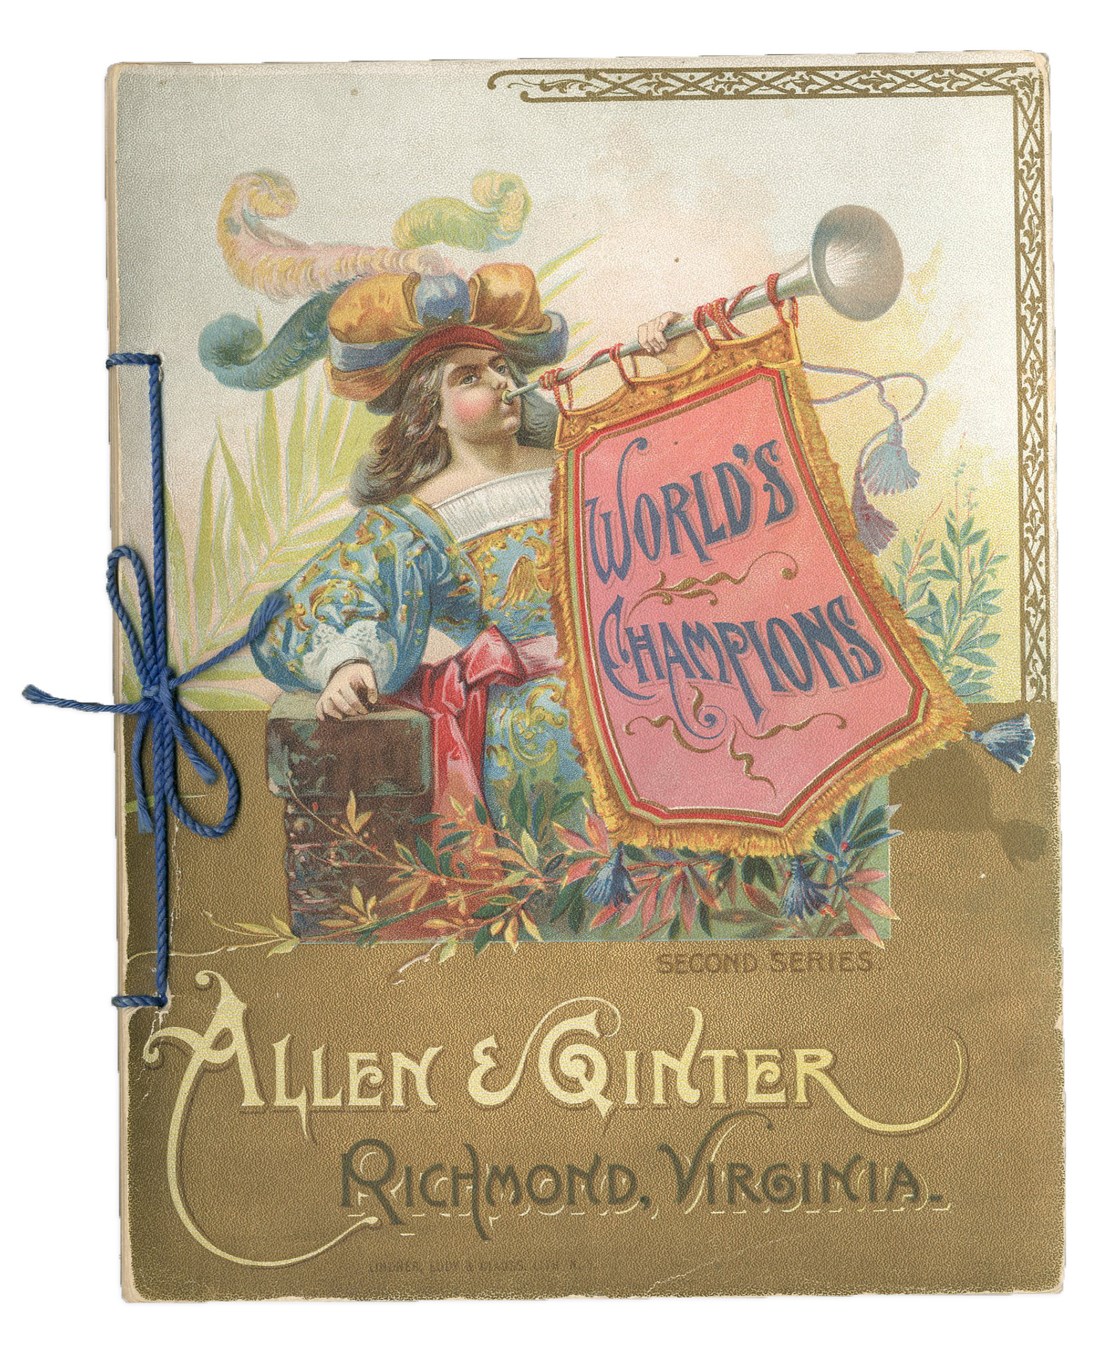 1888 Allen & Ginter World's Champions Second Series Album